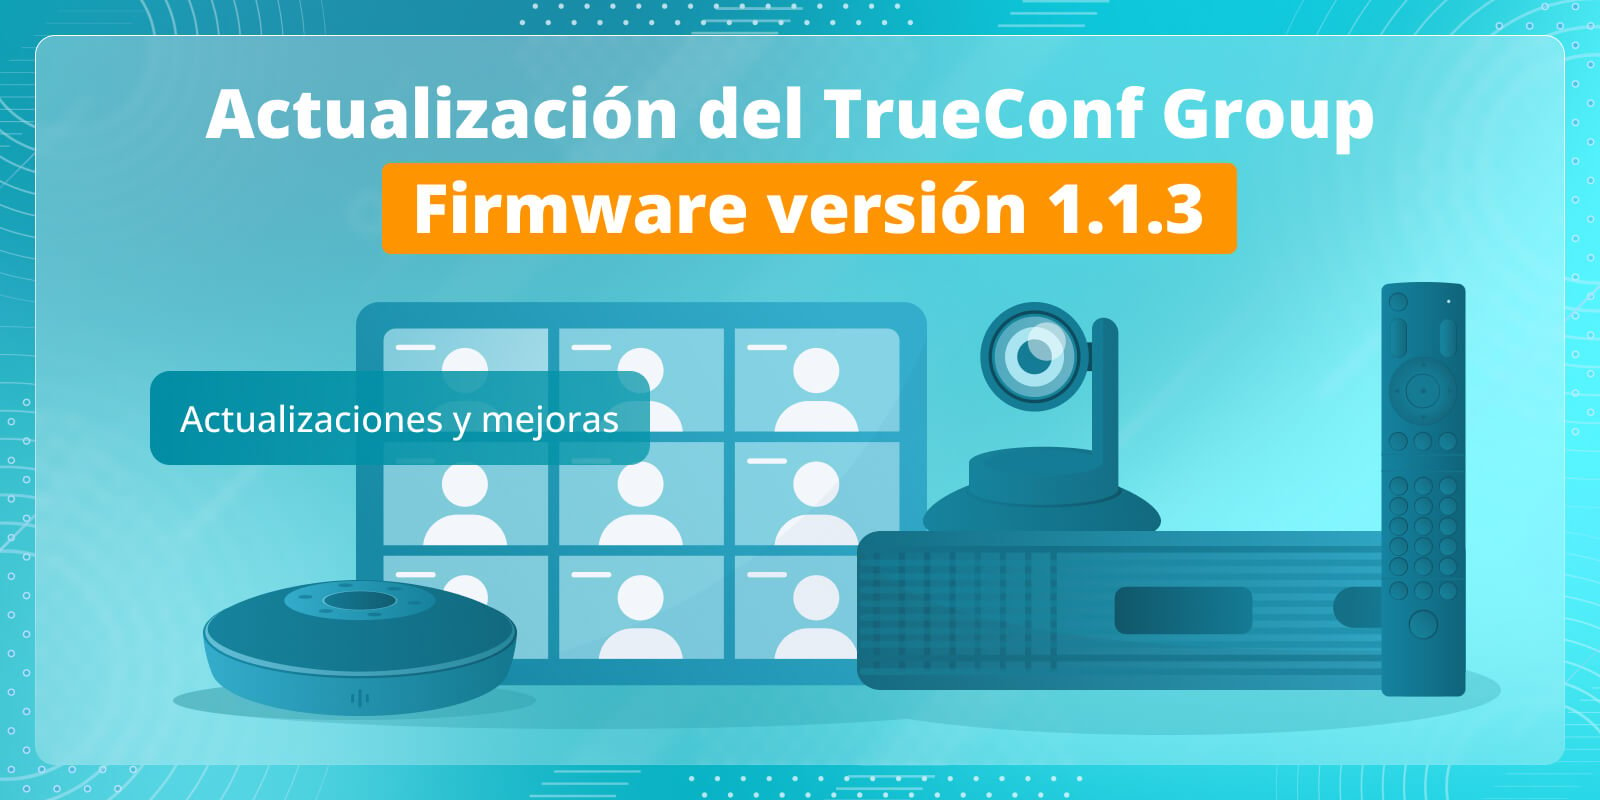 TrueConf Group 1.1.3: actualizaciones y mejoras 5